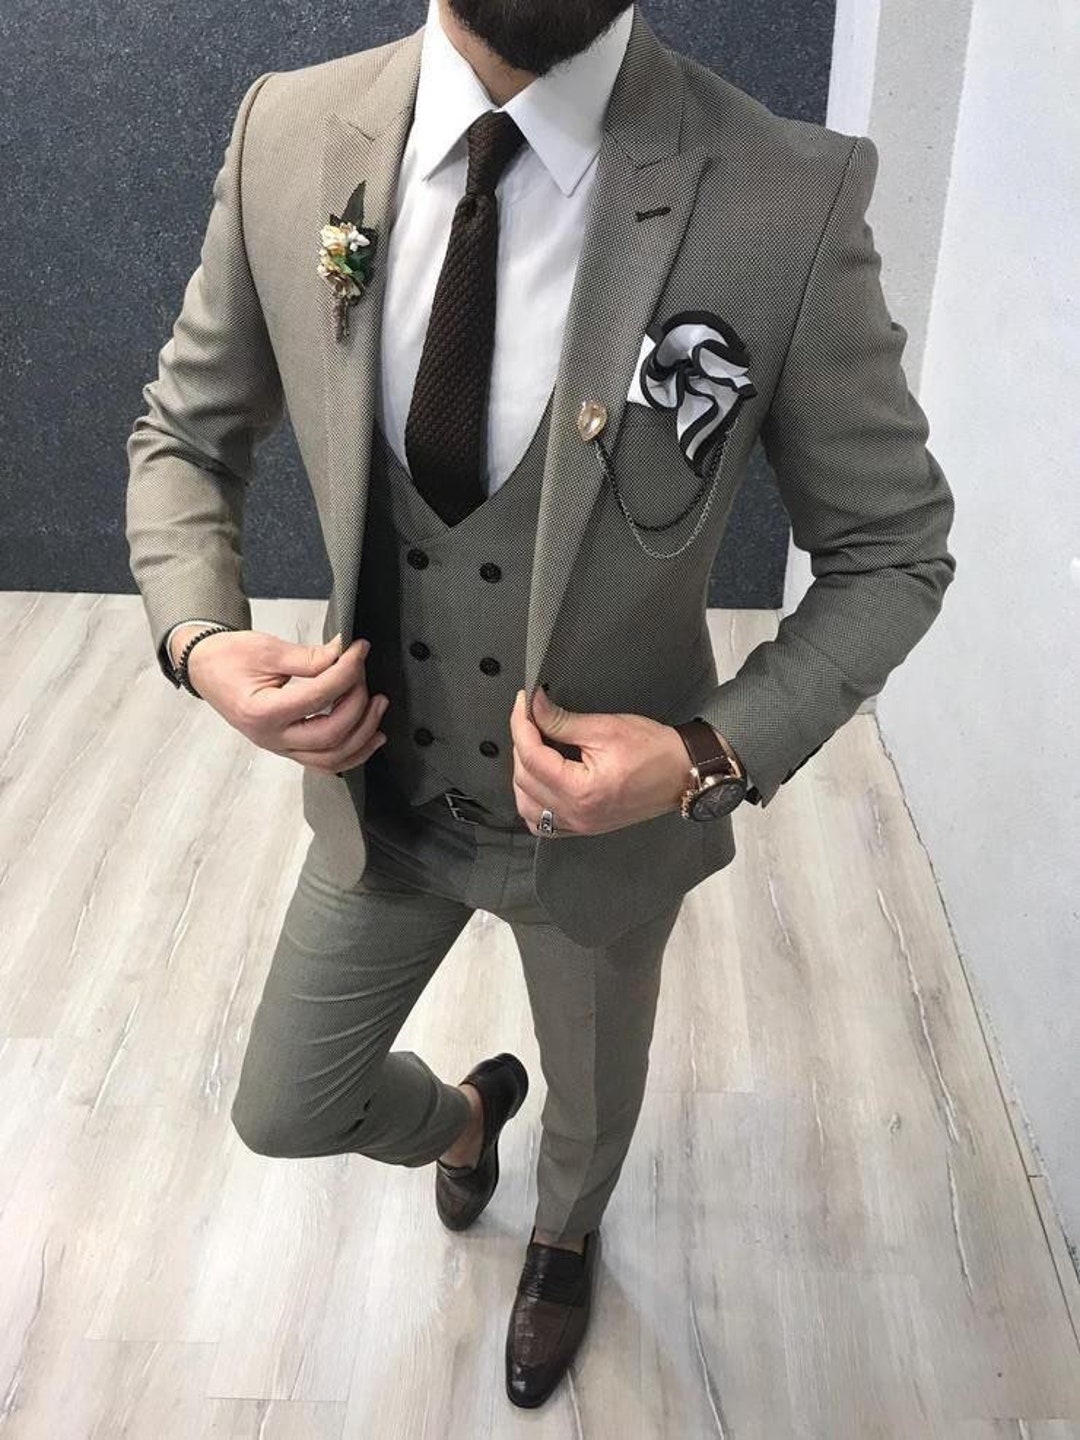 Suit for Men 3 Piece Suit Mens Suit Wedding Suitdate - Etsy